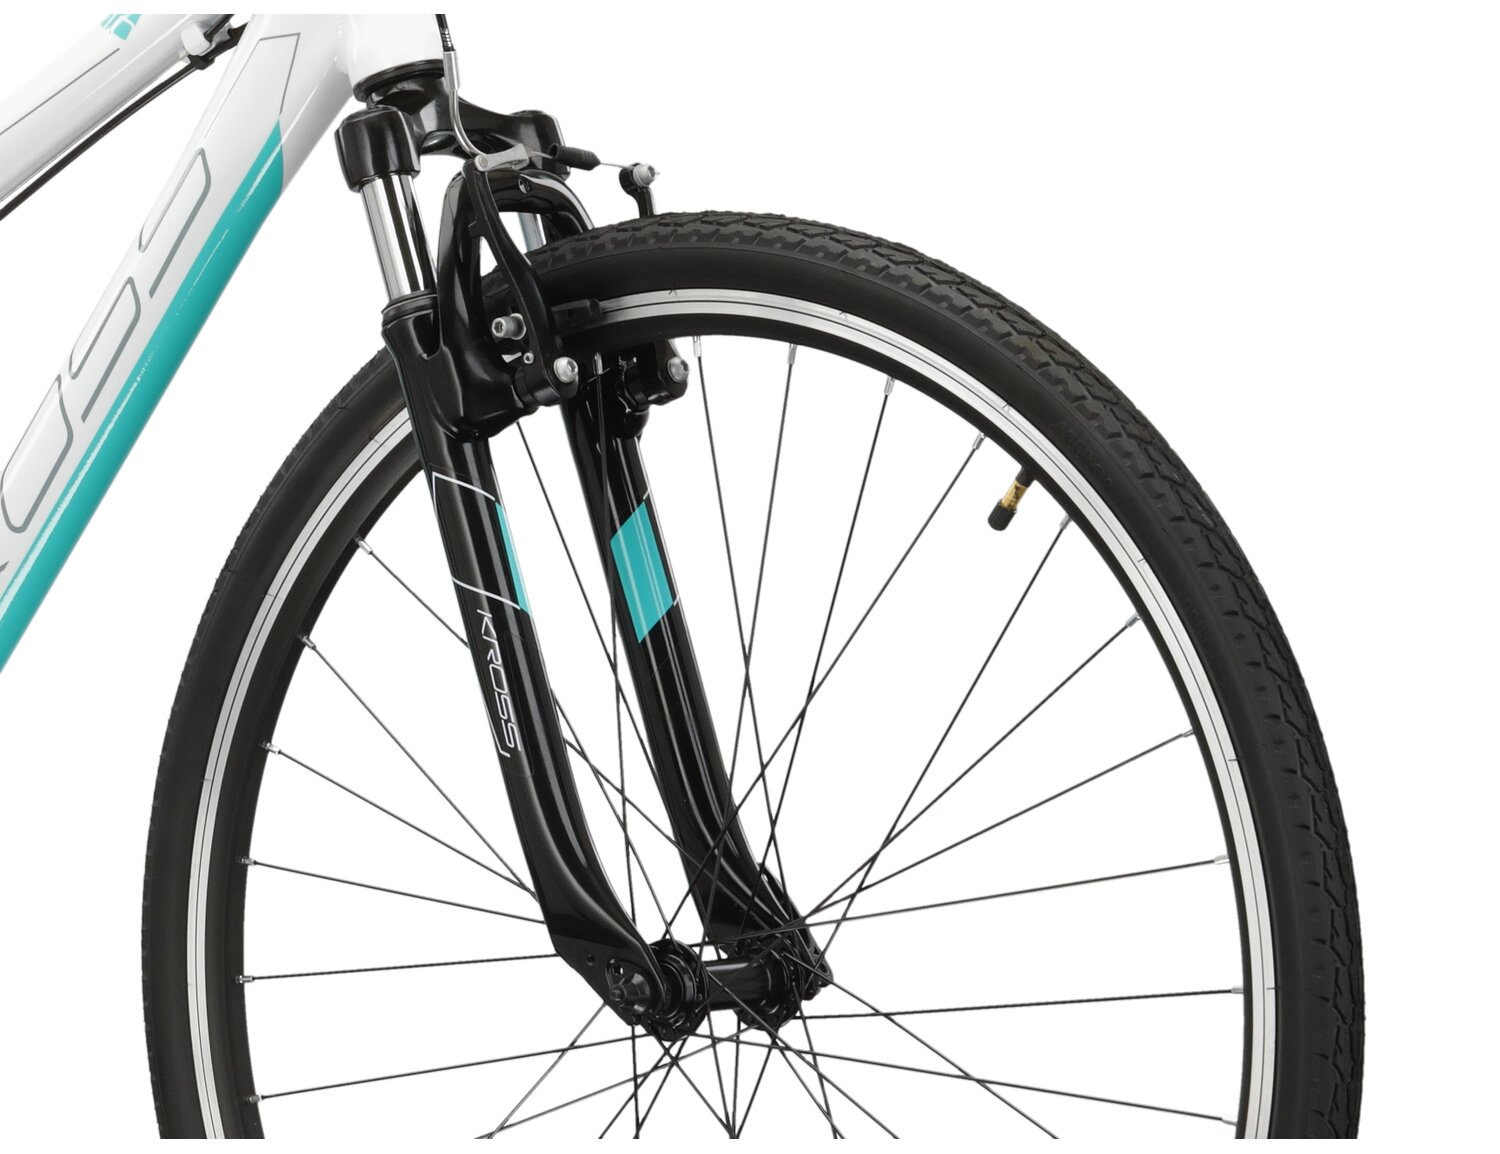 Aluminowa rama, amortyzowany widelec oraz opony w rowerze crossowym KROSS Evado 1.0 